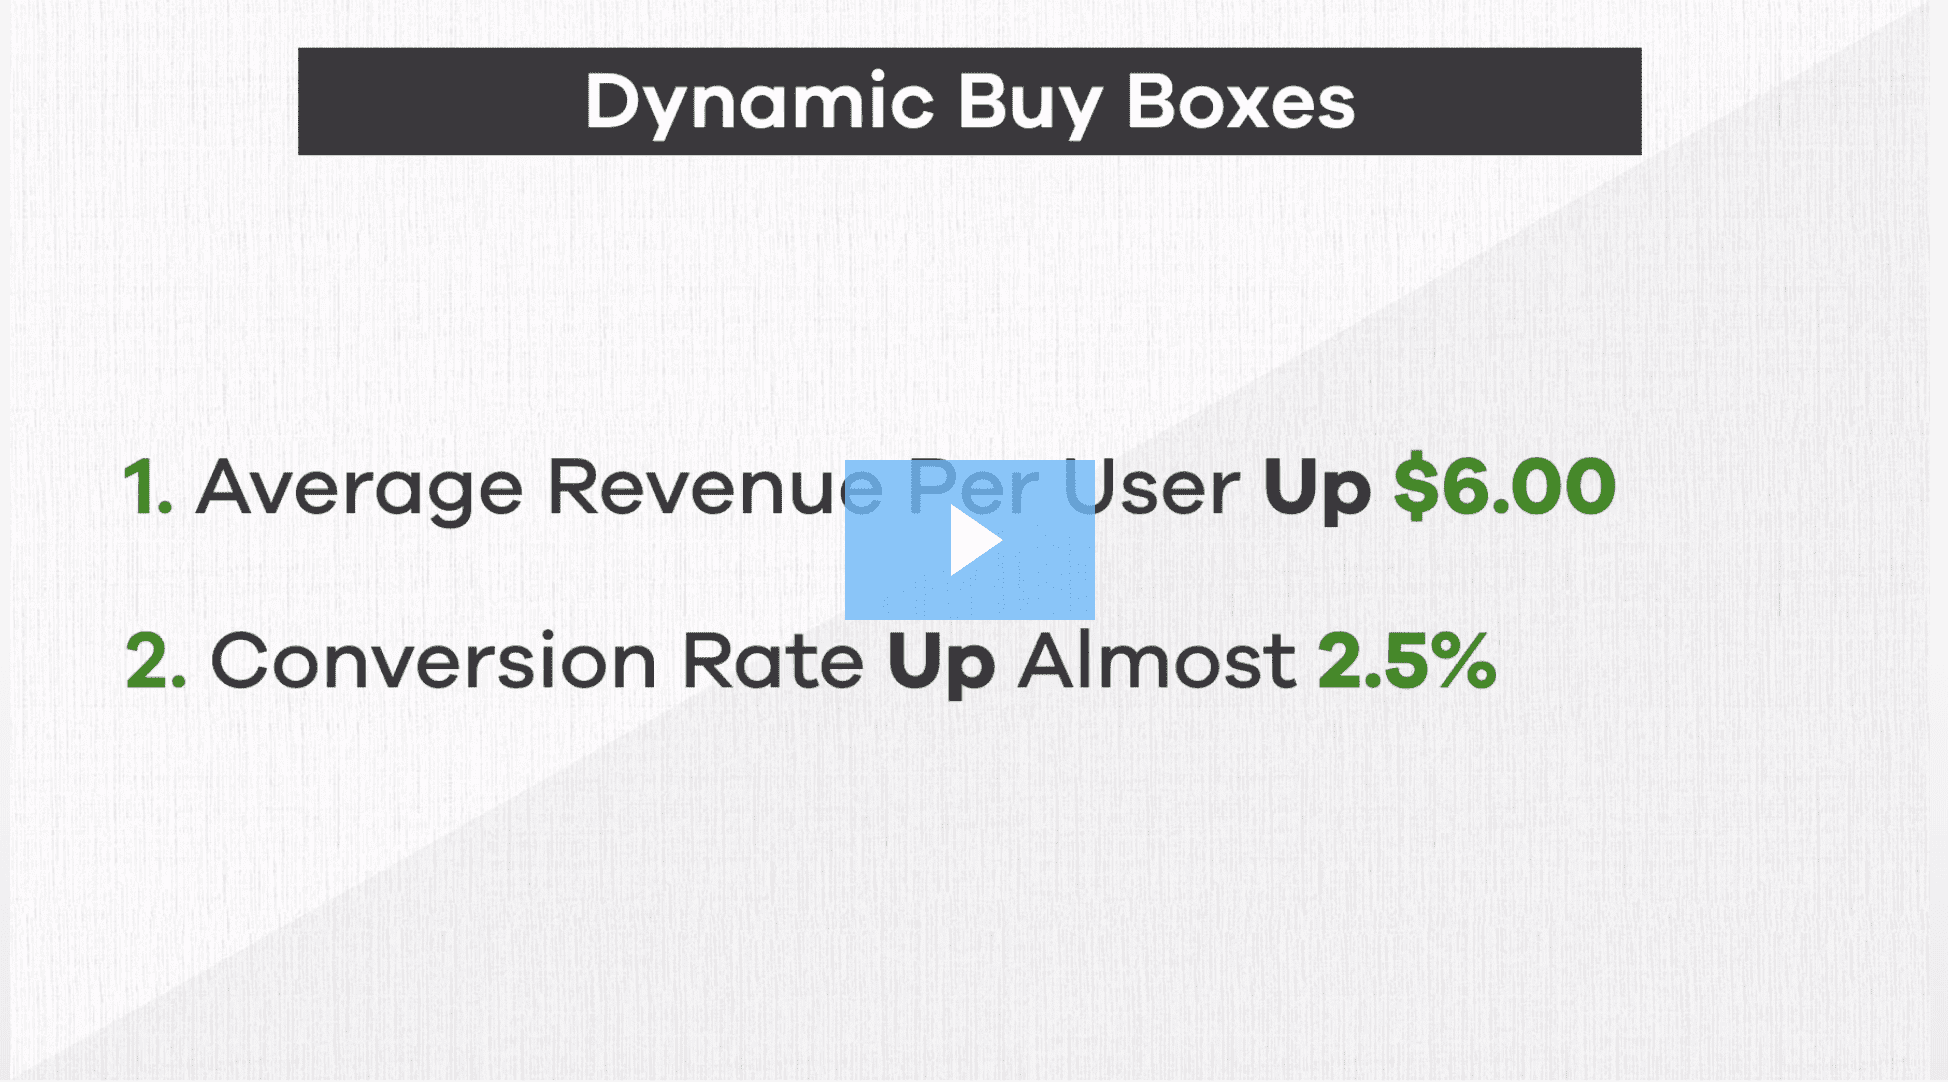 Dynamin Buy boxes